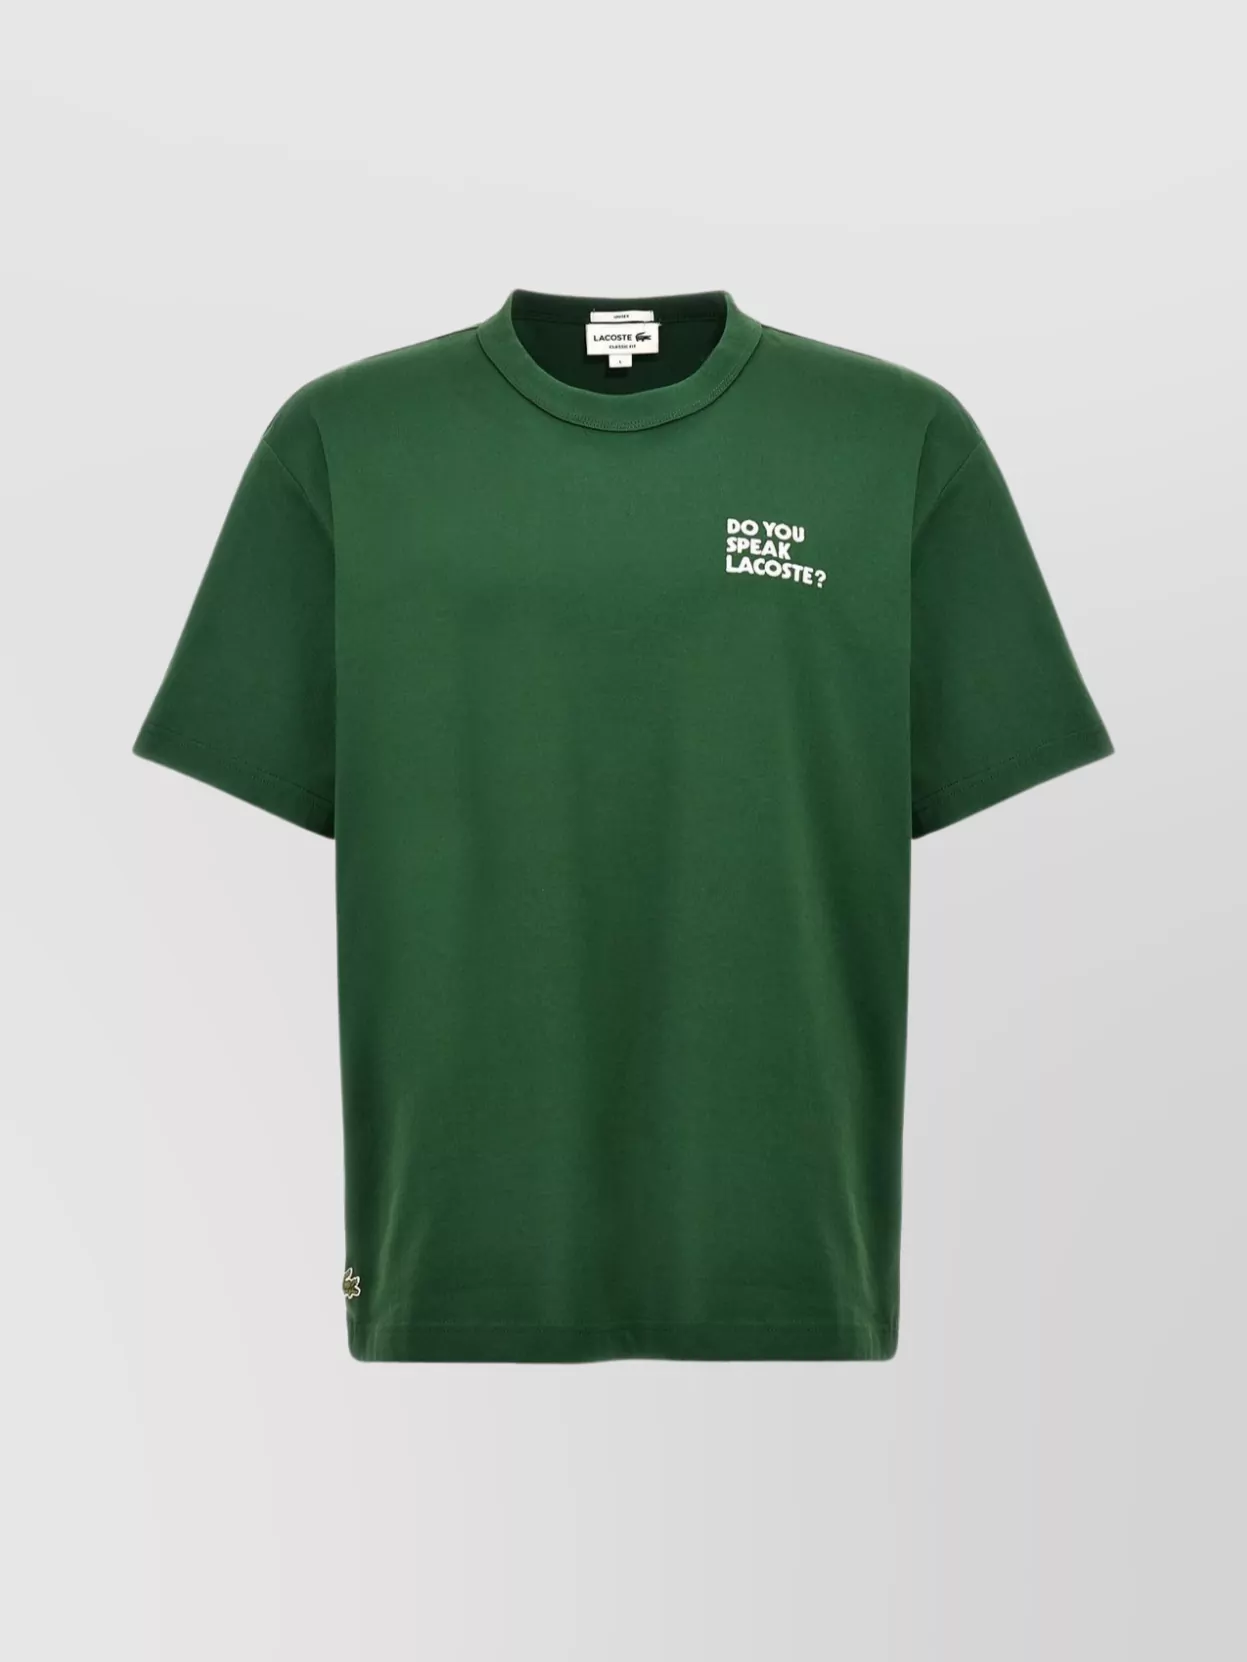 Shop Lacoste "speak ?" Crew Neck T-shirt